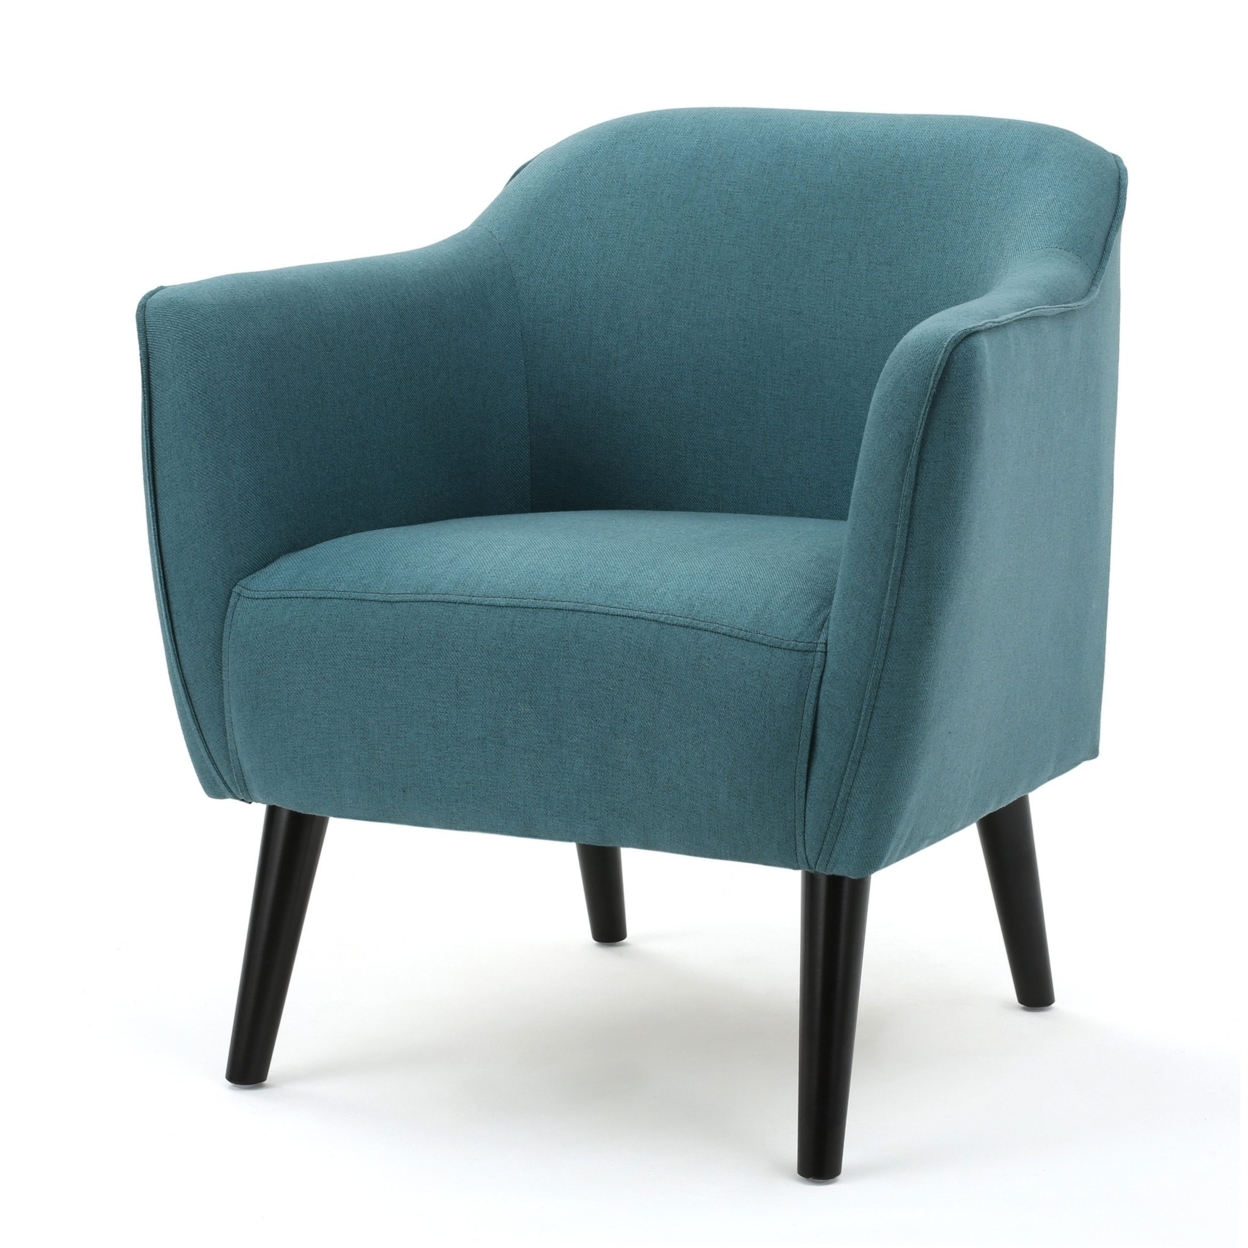 Tresten Fabric Mid Century Modern Arm Chair - Dark Teal